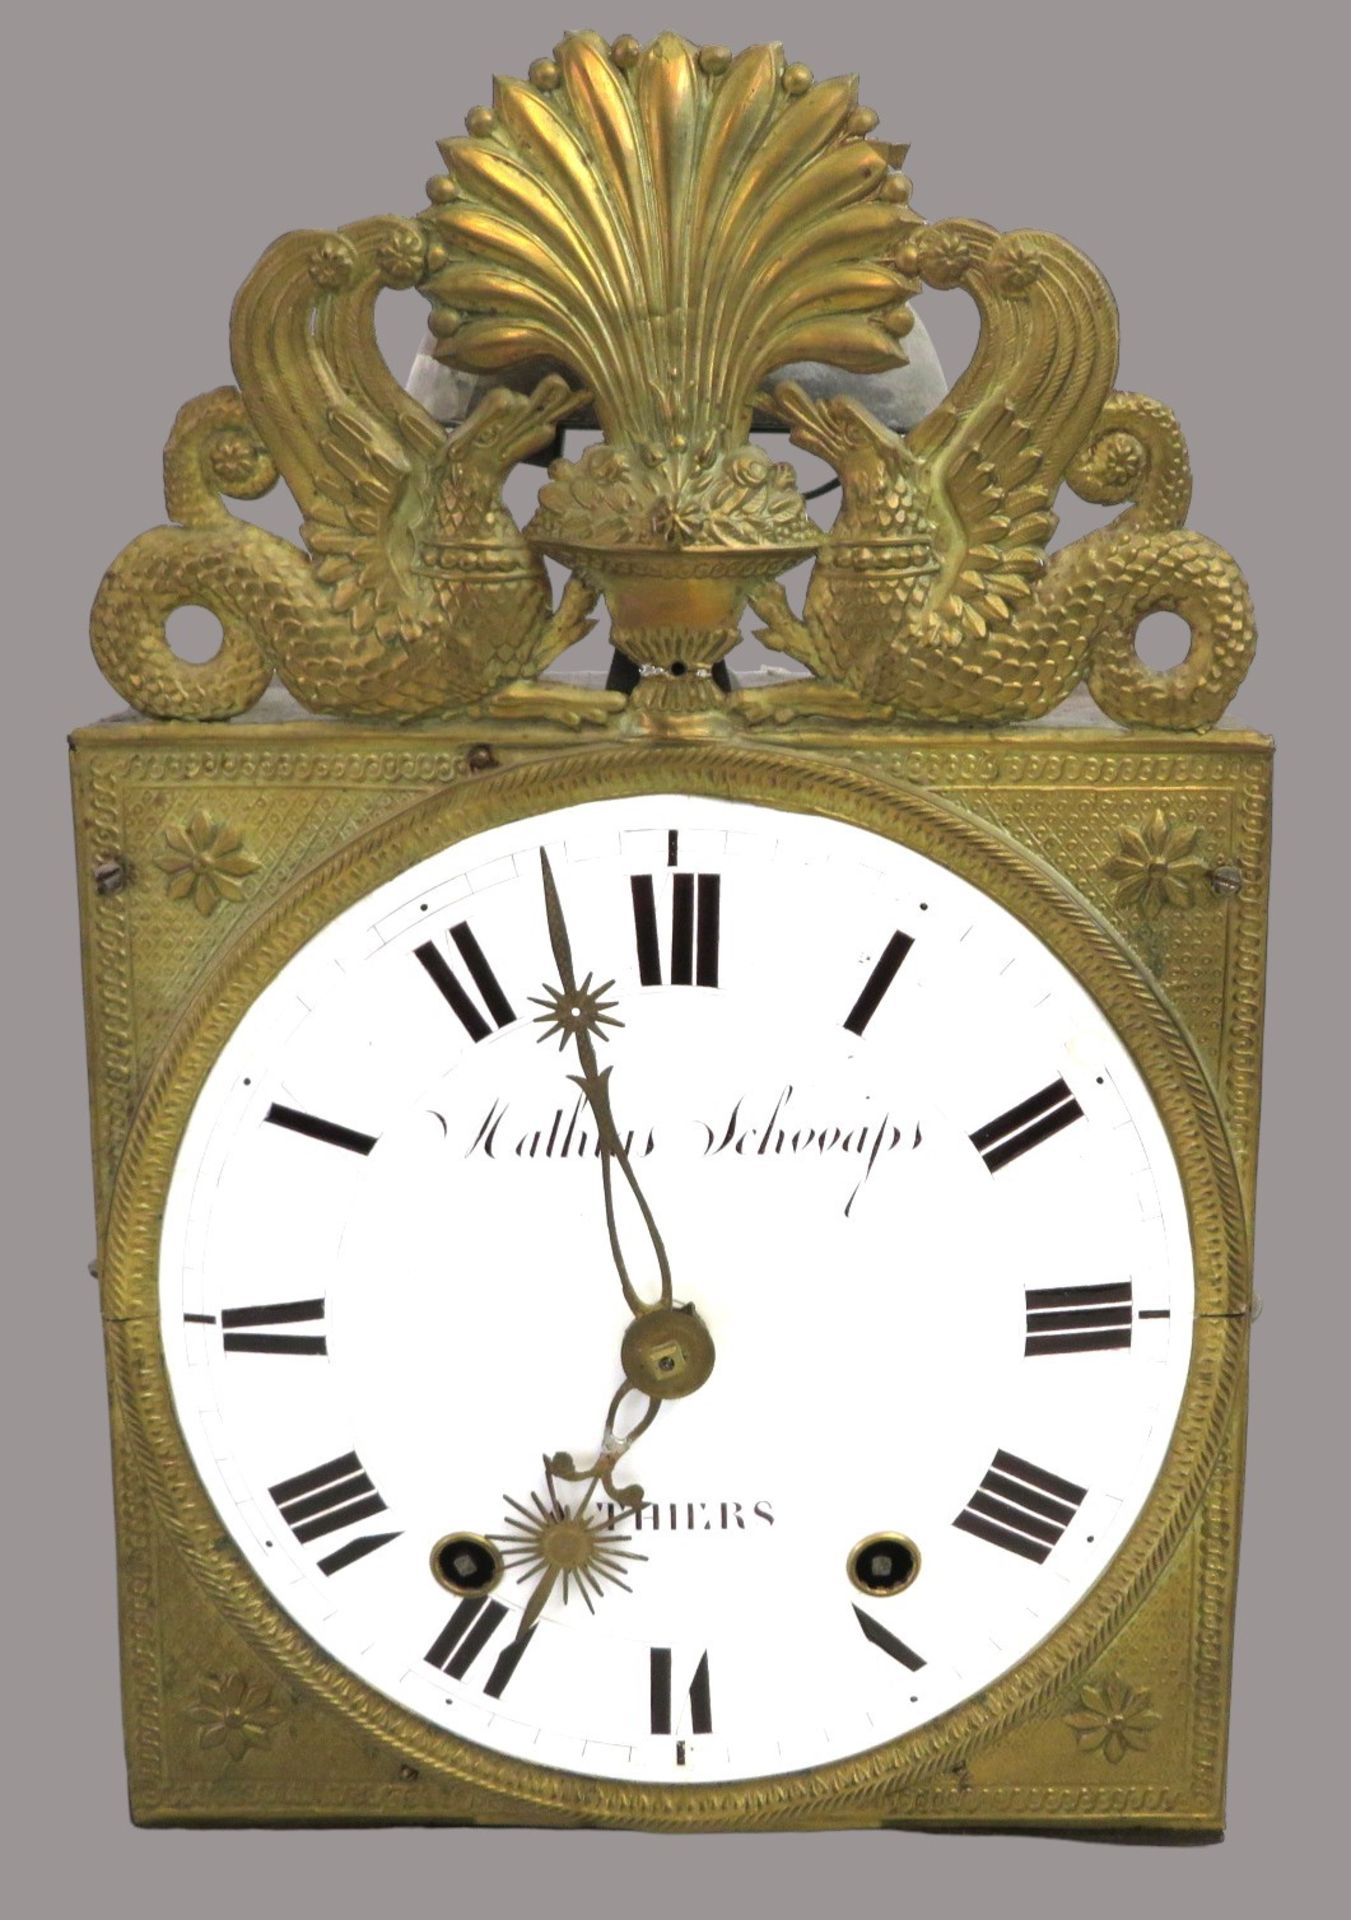 Comtoise-Uhr, Frankreich, Mathias Schooaps Thiers, 1. Hälfte 19. Jahrhundert, Faltpendel, 2-gewicht